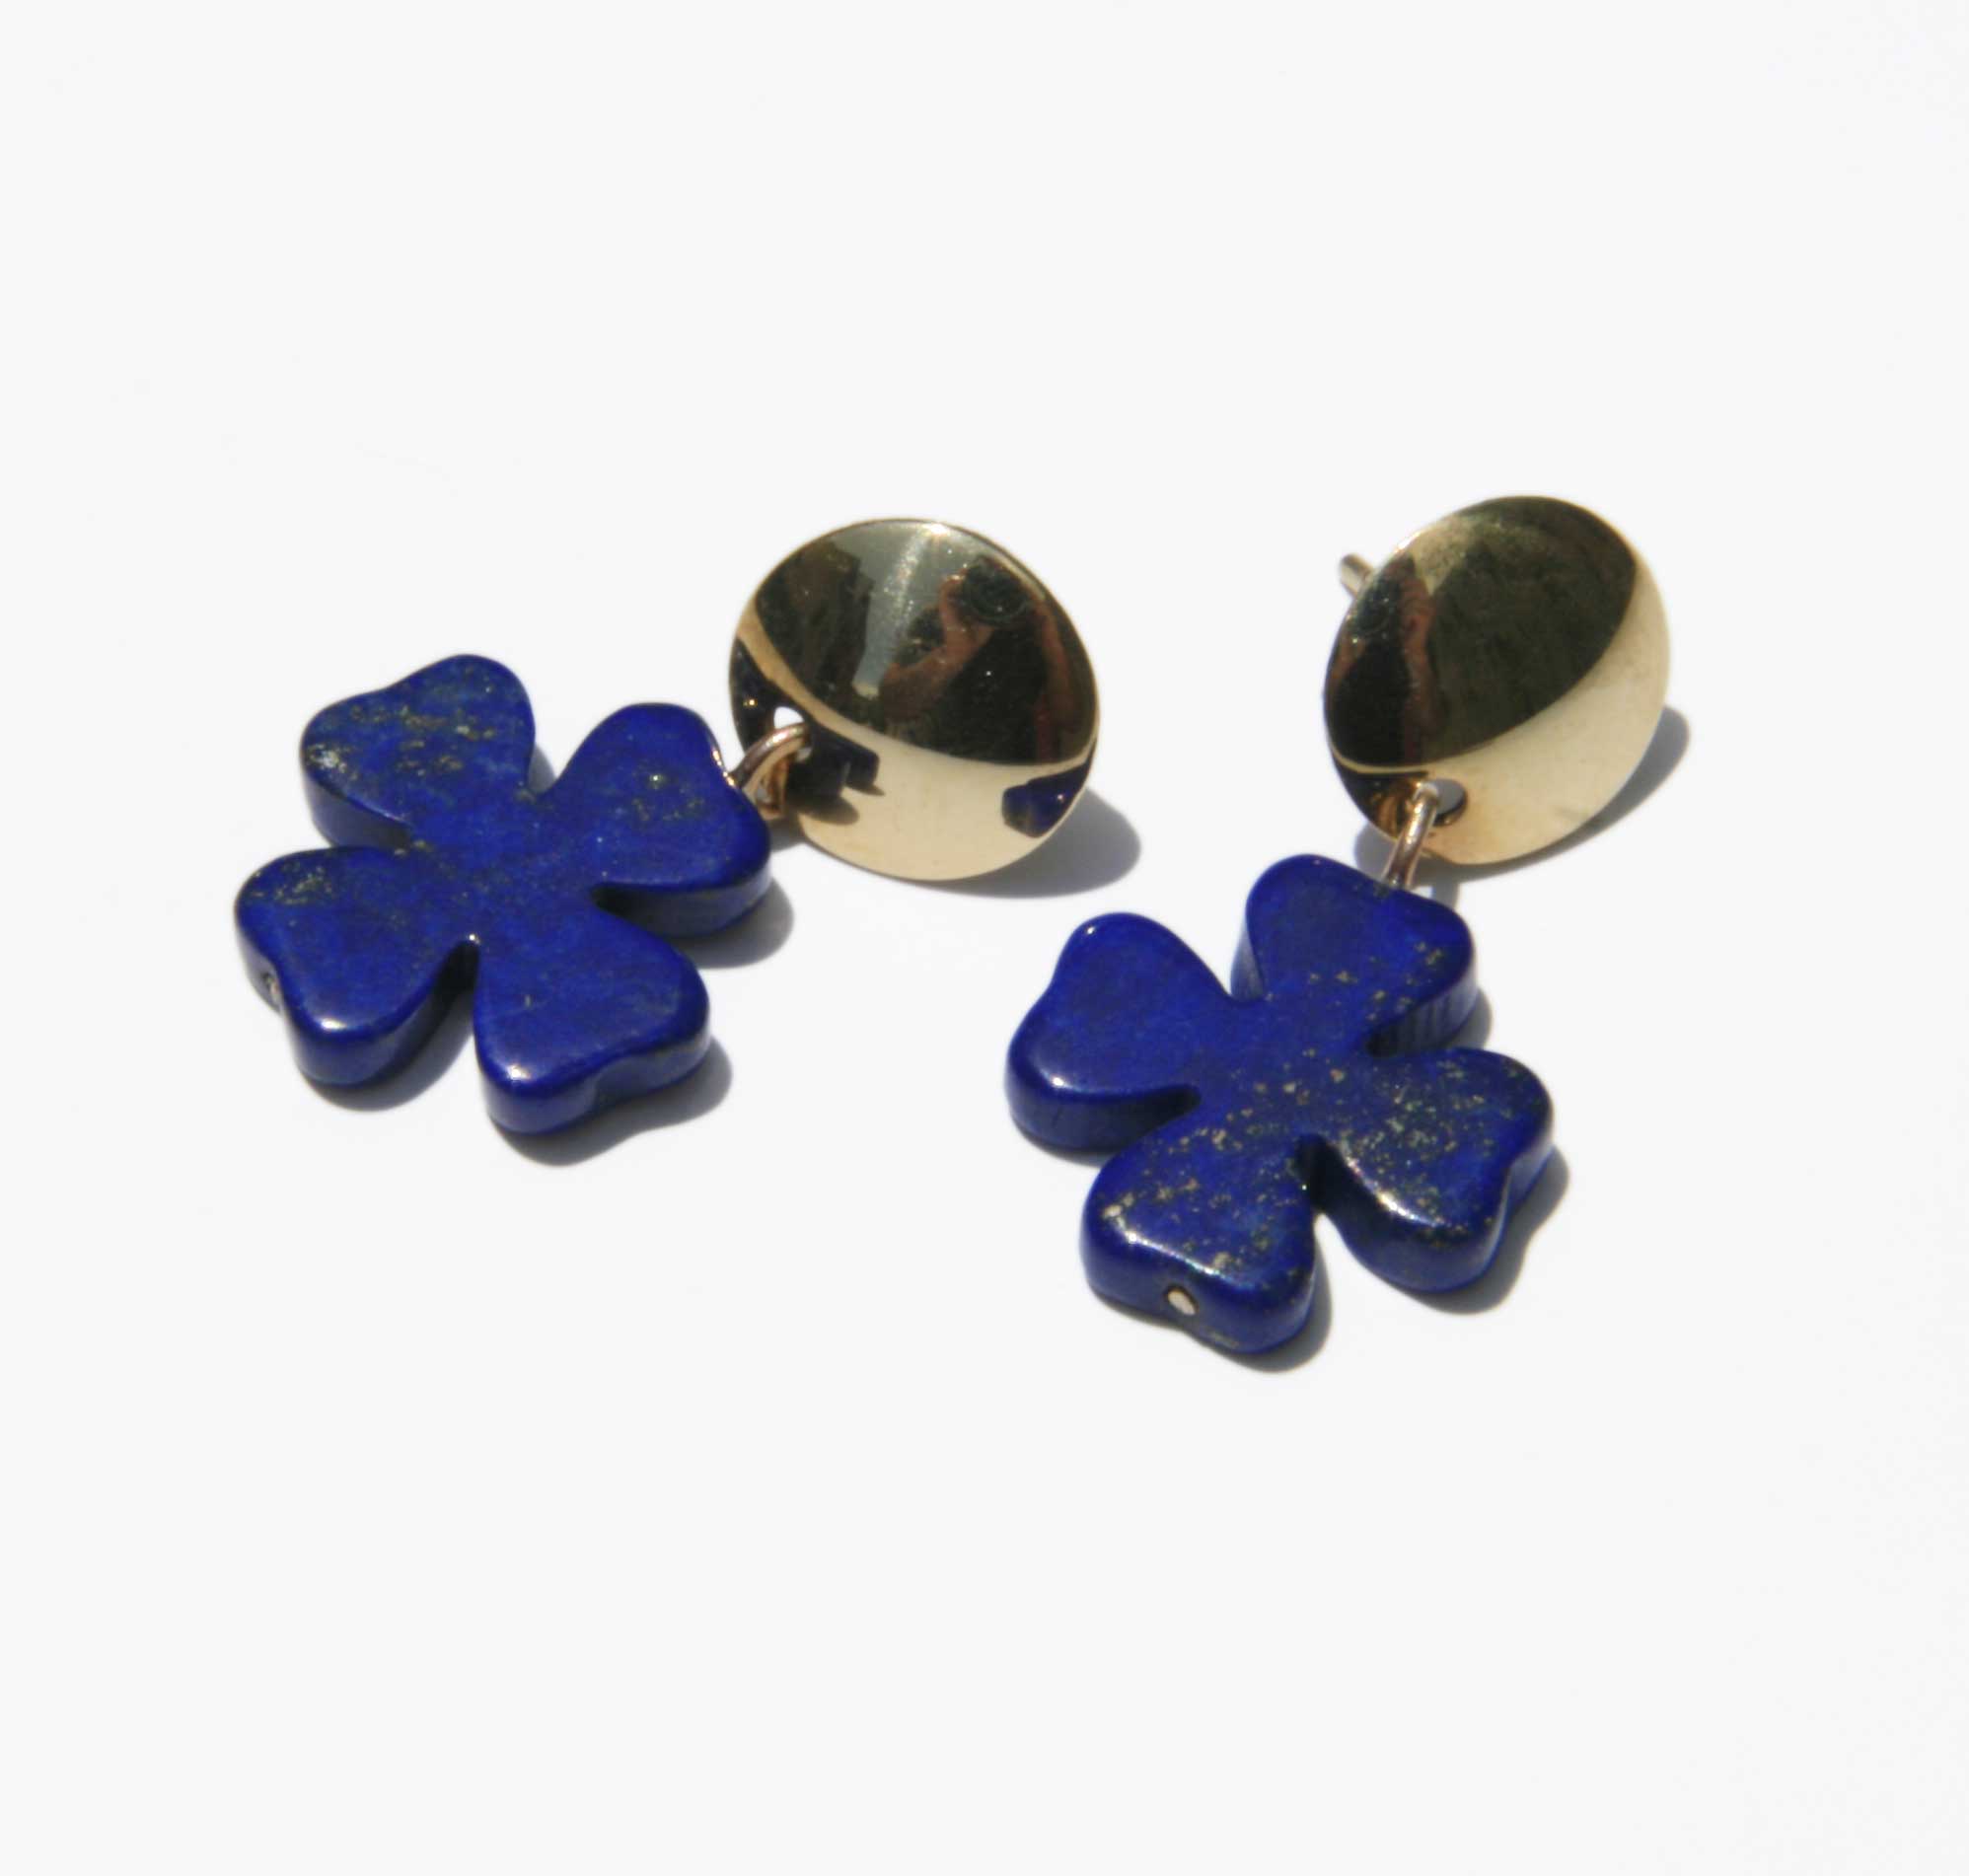 Lapis clover earrings